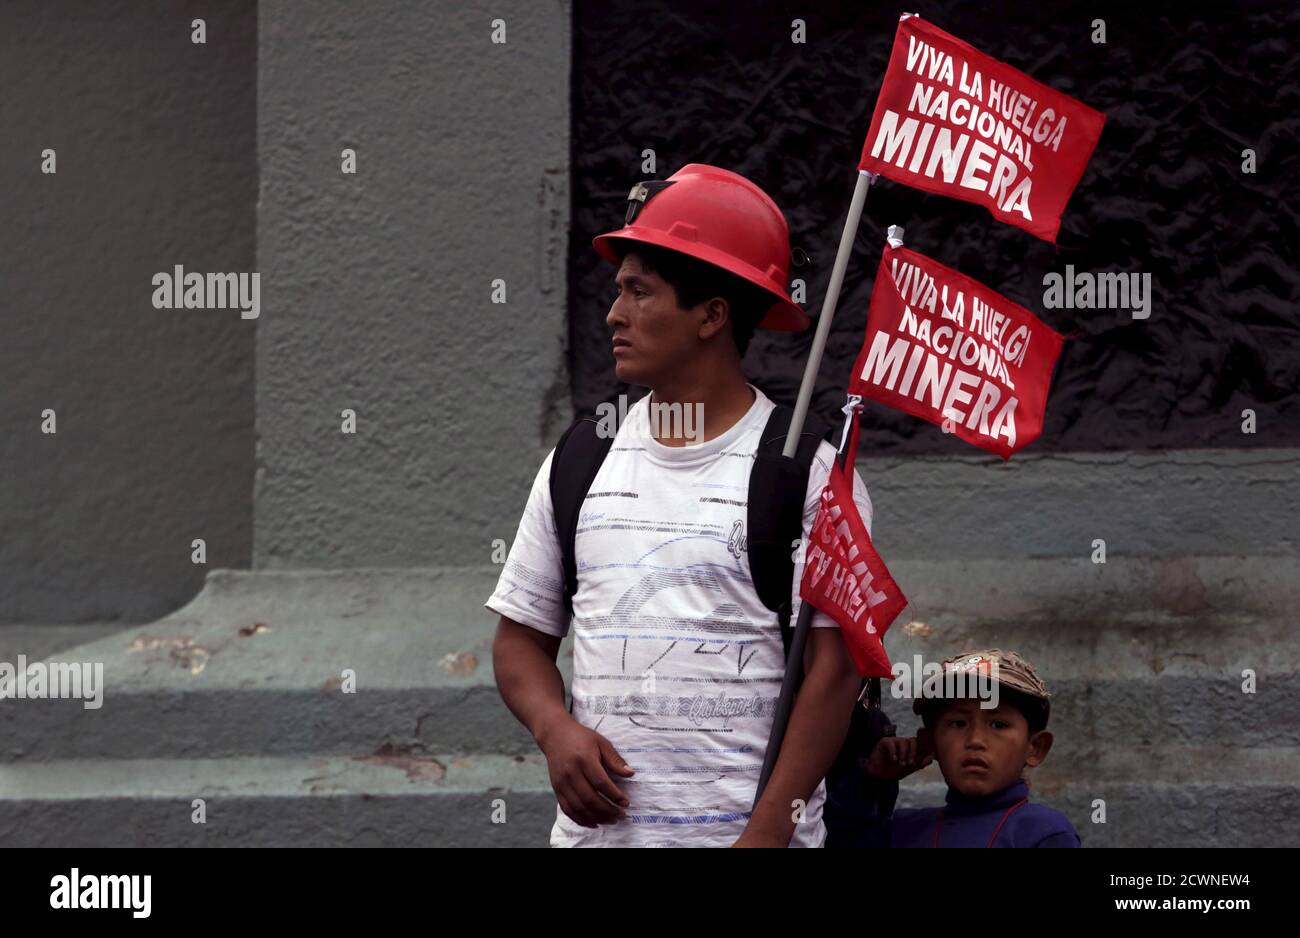 Un minero tiene un signo que dice: "Viva la huelga Nacional Minera" mientras se encuentra en la plaza principal durante una huelga nacional minera en Lima, 21 de mayo de 2015. Trabajadores sindicalizados en minas en Perú iniciaron una huelga indefinida el lunes en un intento de presionar al gobierno para que fortalezca las leyes laborales, dijo el jefe del sindicato nacional de trabajadores de minas. Las paradas de trabajo programadas en varias minas amenazan con frenar la producción mineral en Perú, el tercer productor mundial de cobre, plata y estaño y el séptimo mayor productor de oro. REUTERS/Mariana Bazo Foto de stock